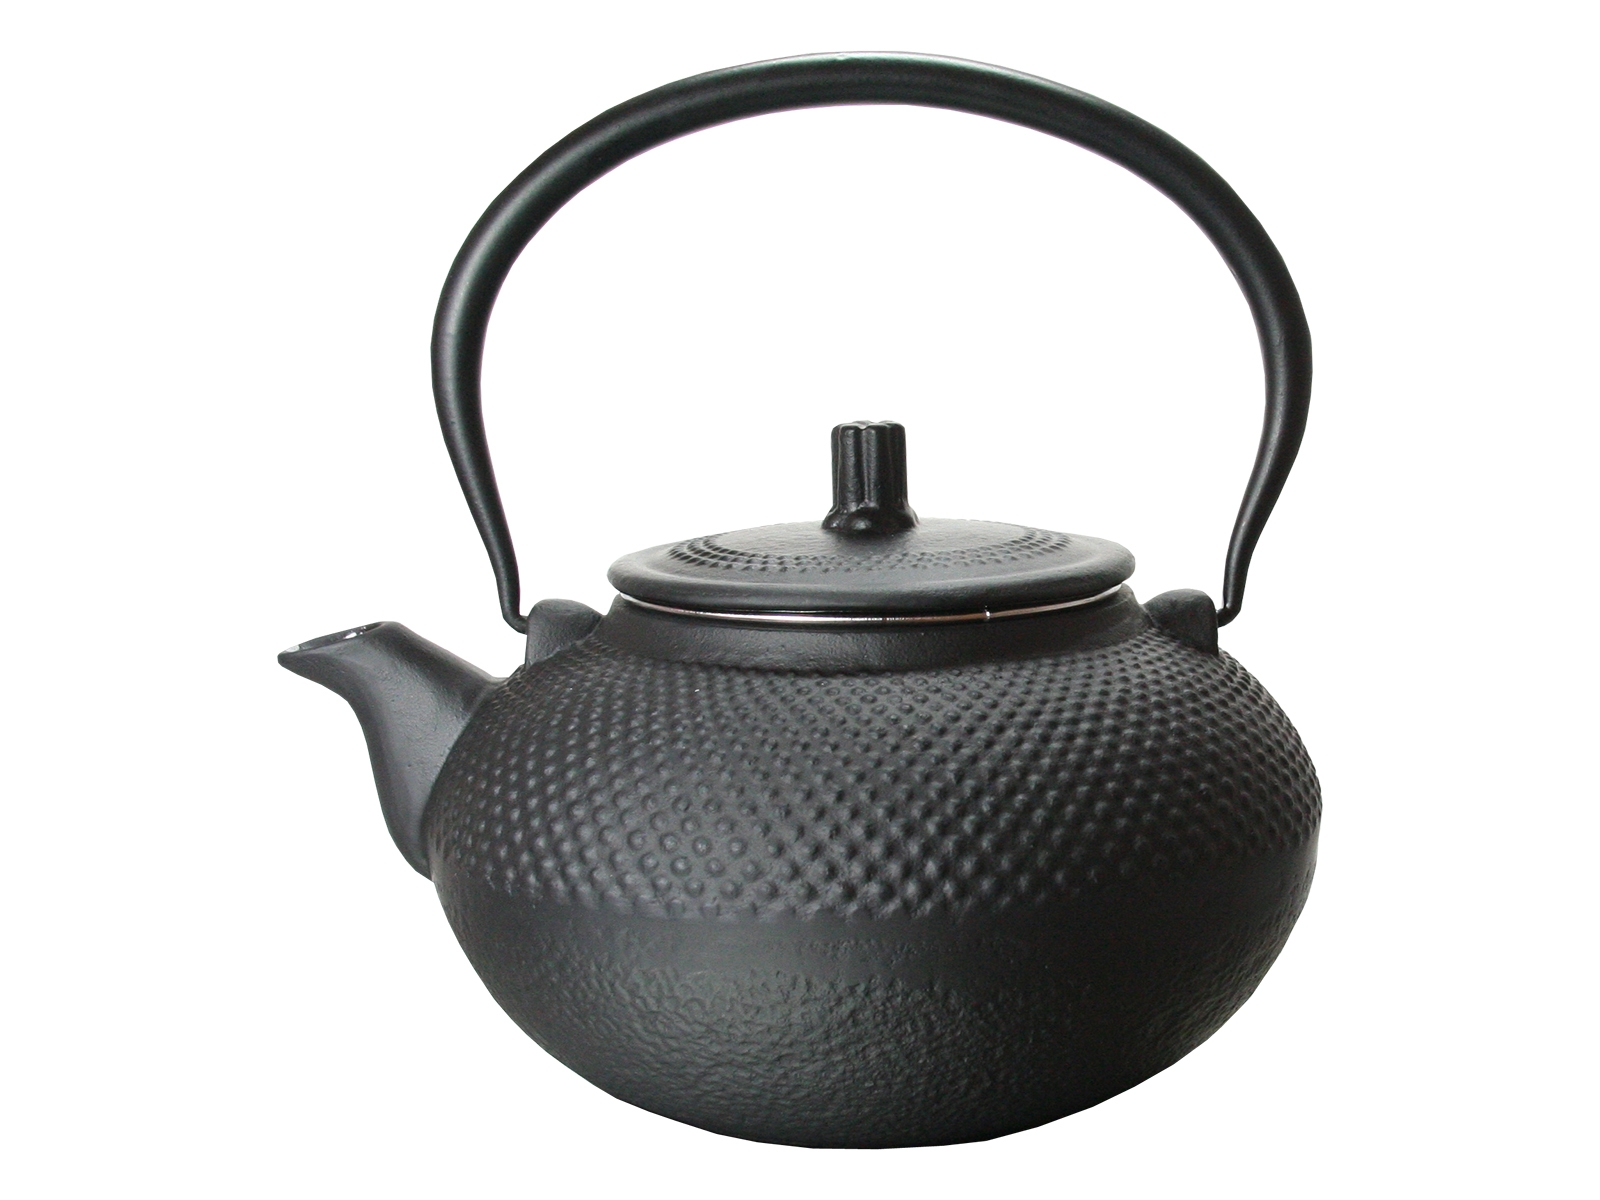 Asiatische Gusseisen TeekanneEdelstahl Teesieb 1,2 LiterJapan Style Kanne 